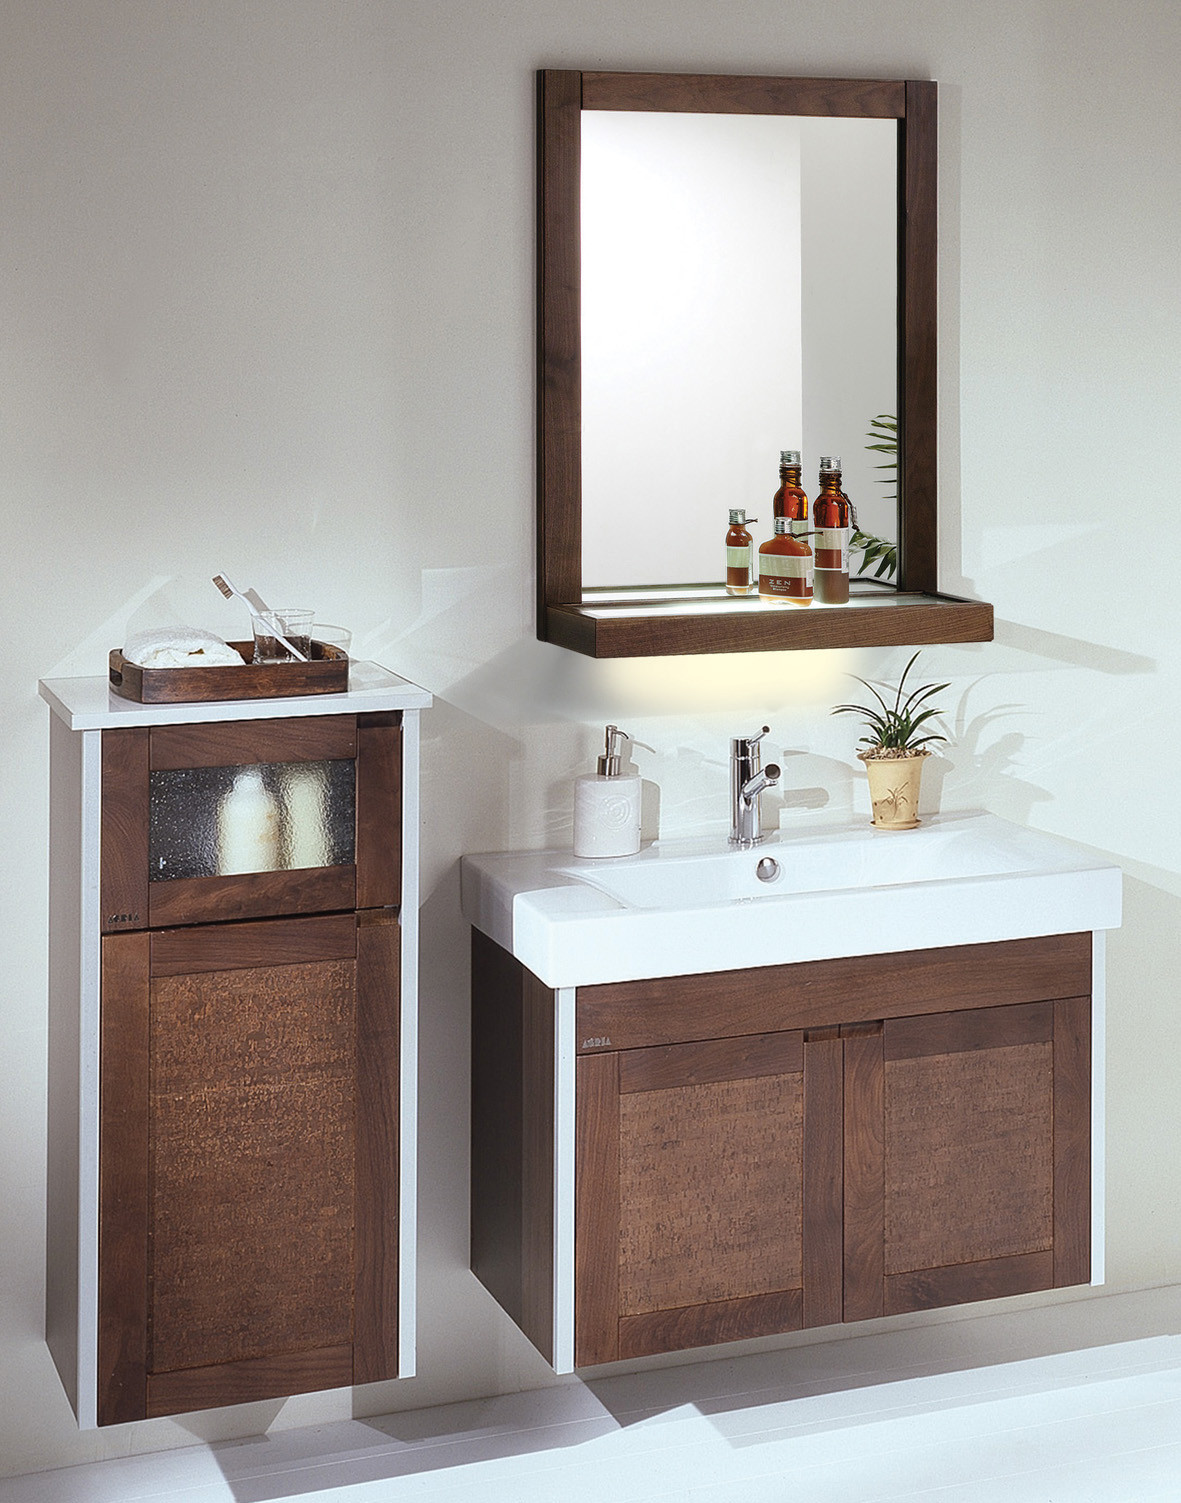 Bathroom Double Vanity Cabinets
 Bathroom Vanities and Sinks pleting Functional Space